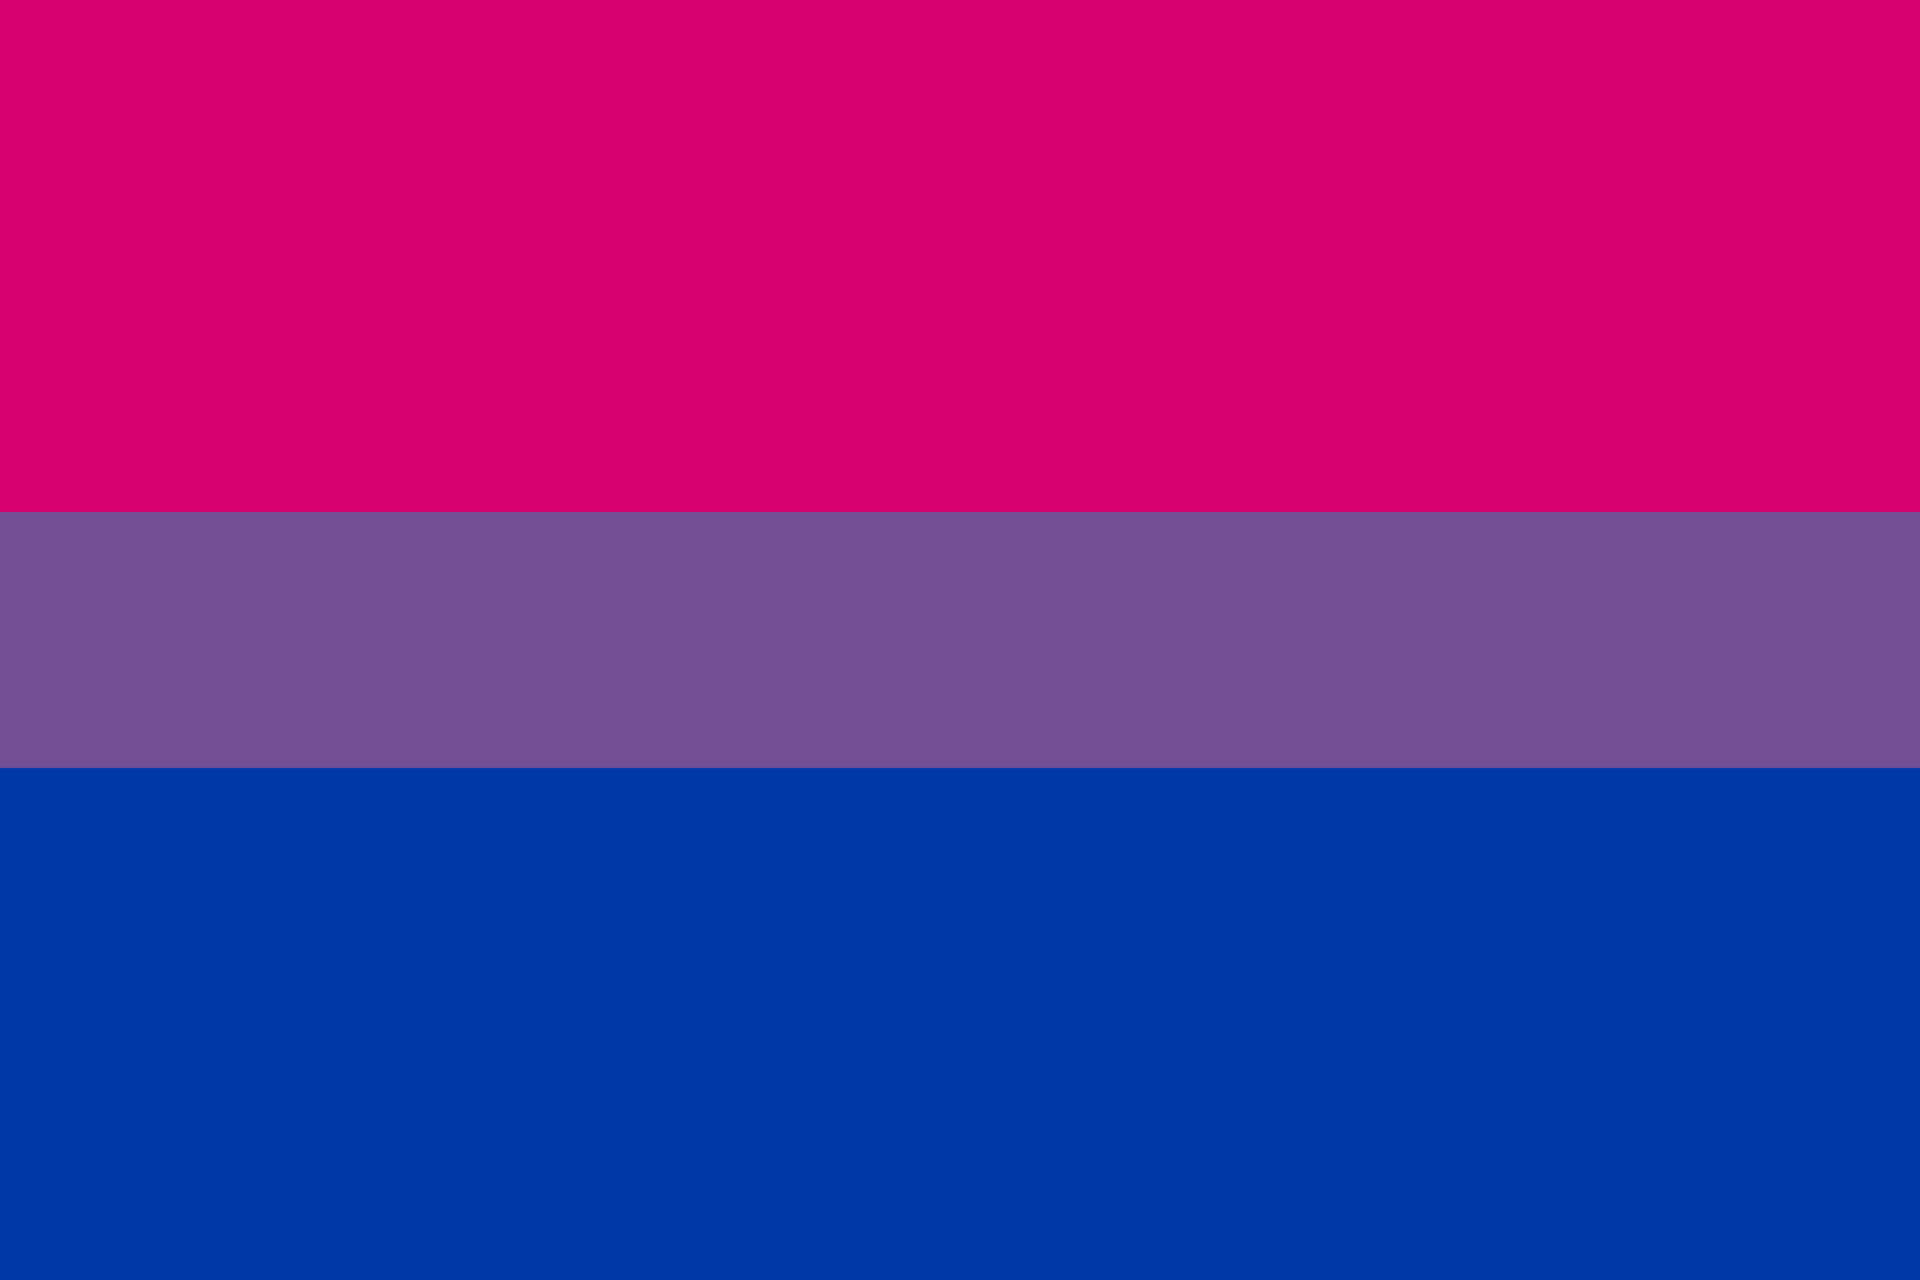 Plain Bisexual Pride Flag Wallpaper